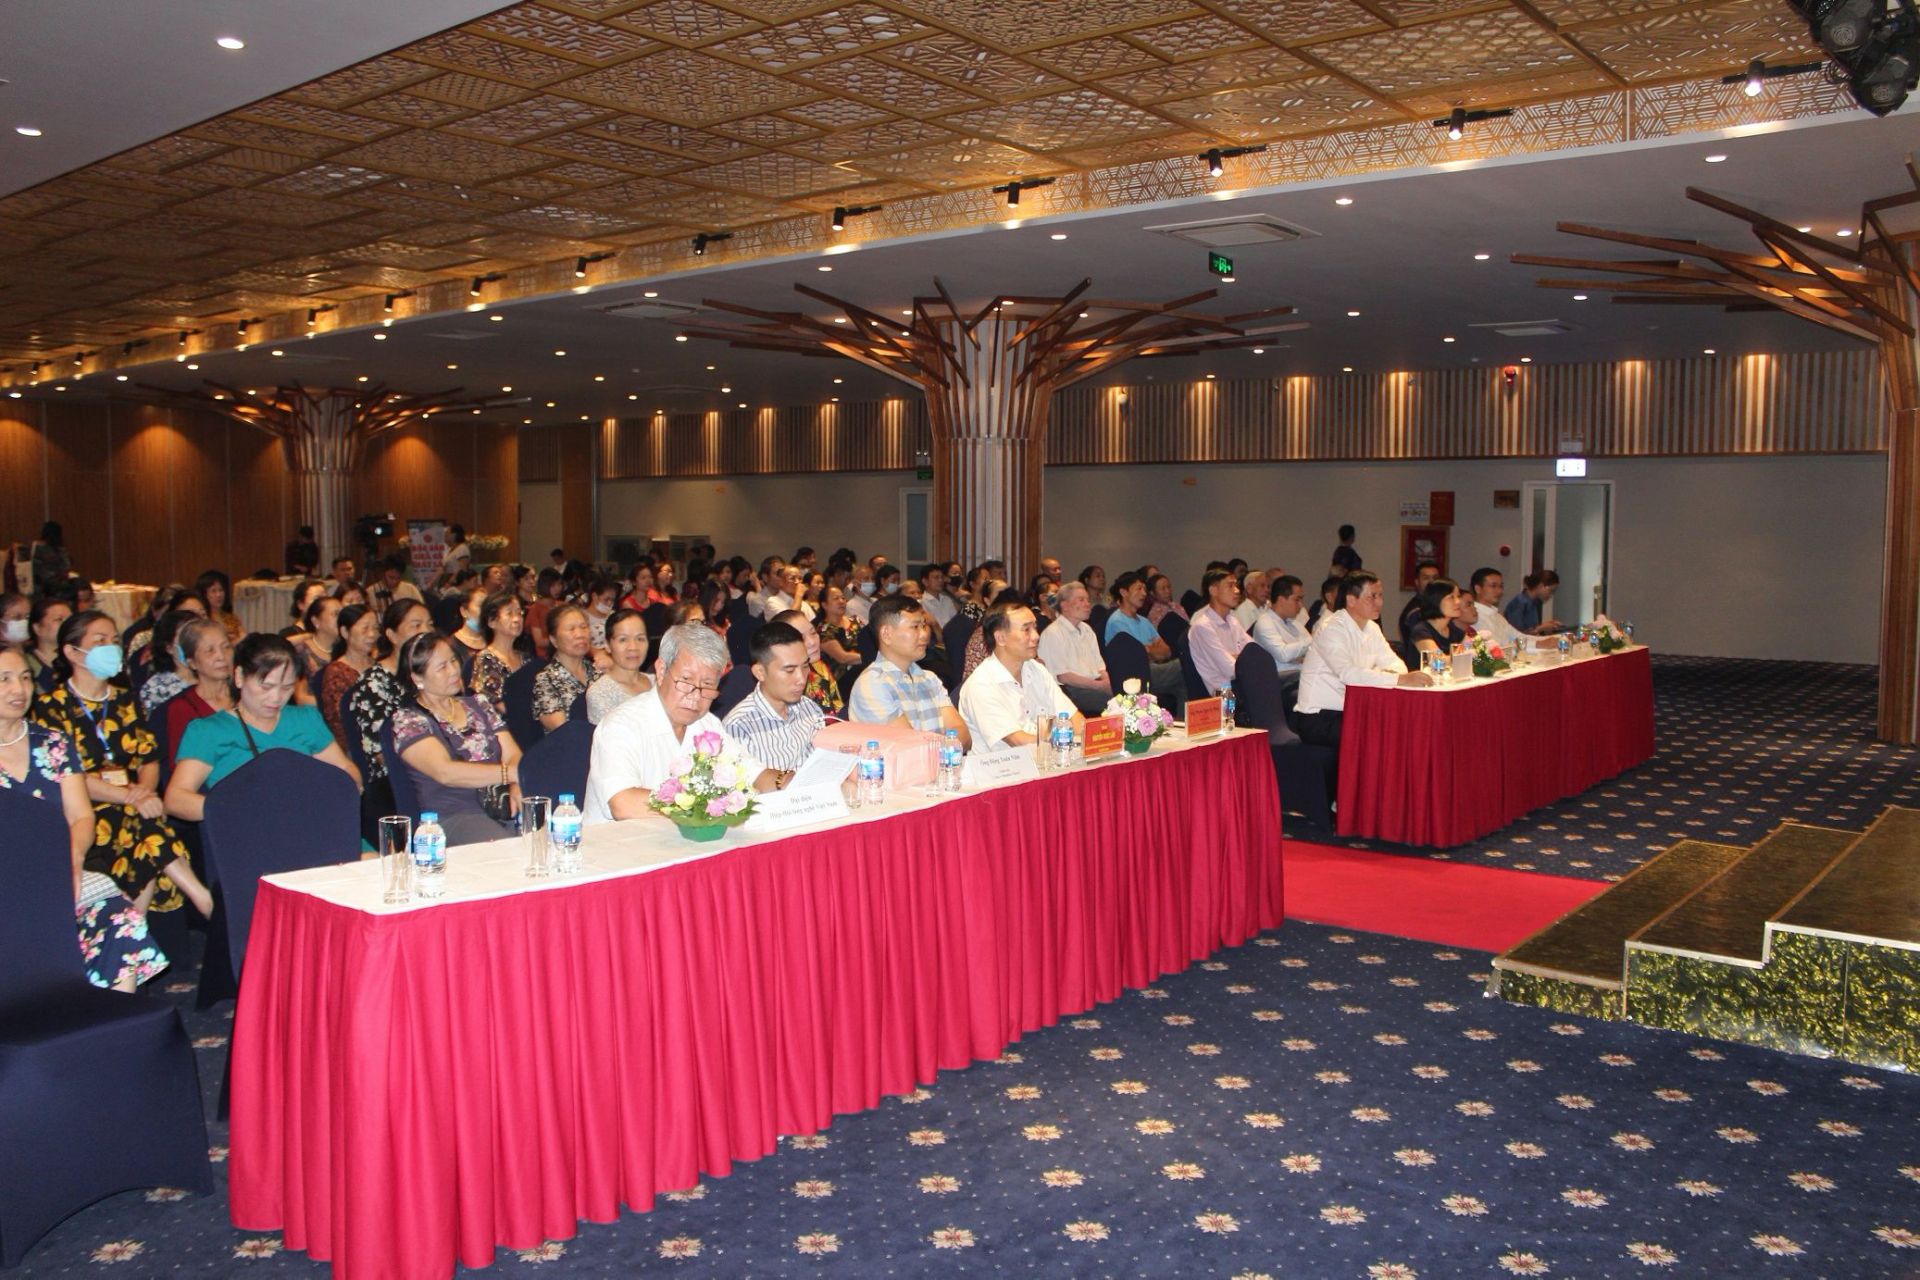 Hội nghị với chủ đề “Quảng bá kết nối sản phẩm làng nghề - Góp phần đẩy mạnh thương hiệu Việt Nam năm 2020”